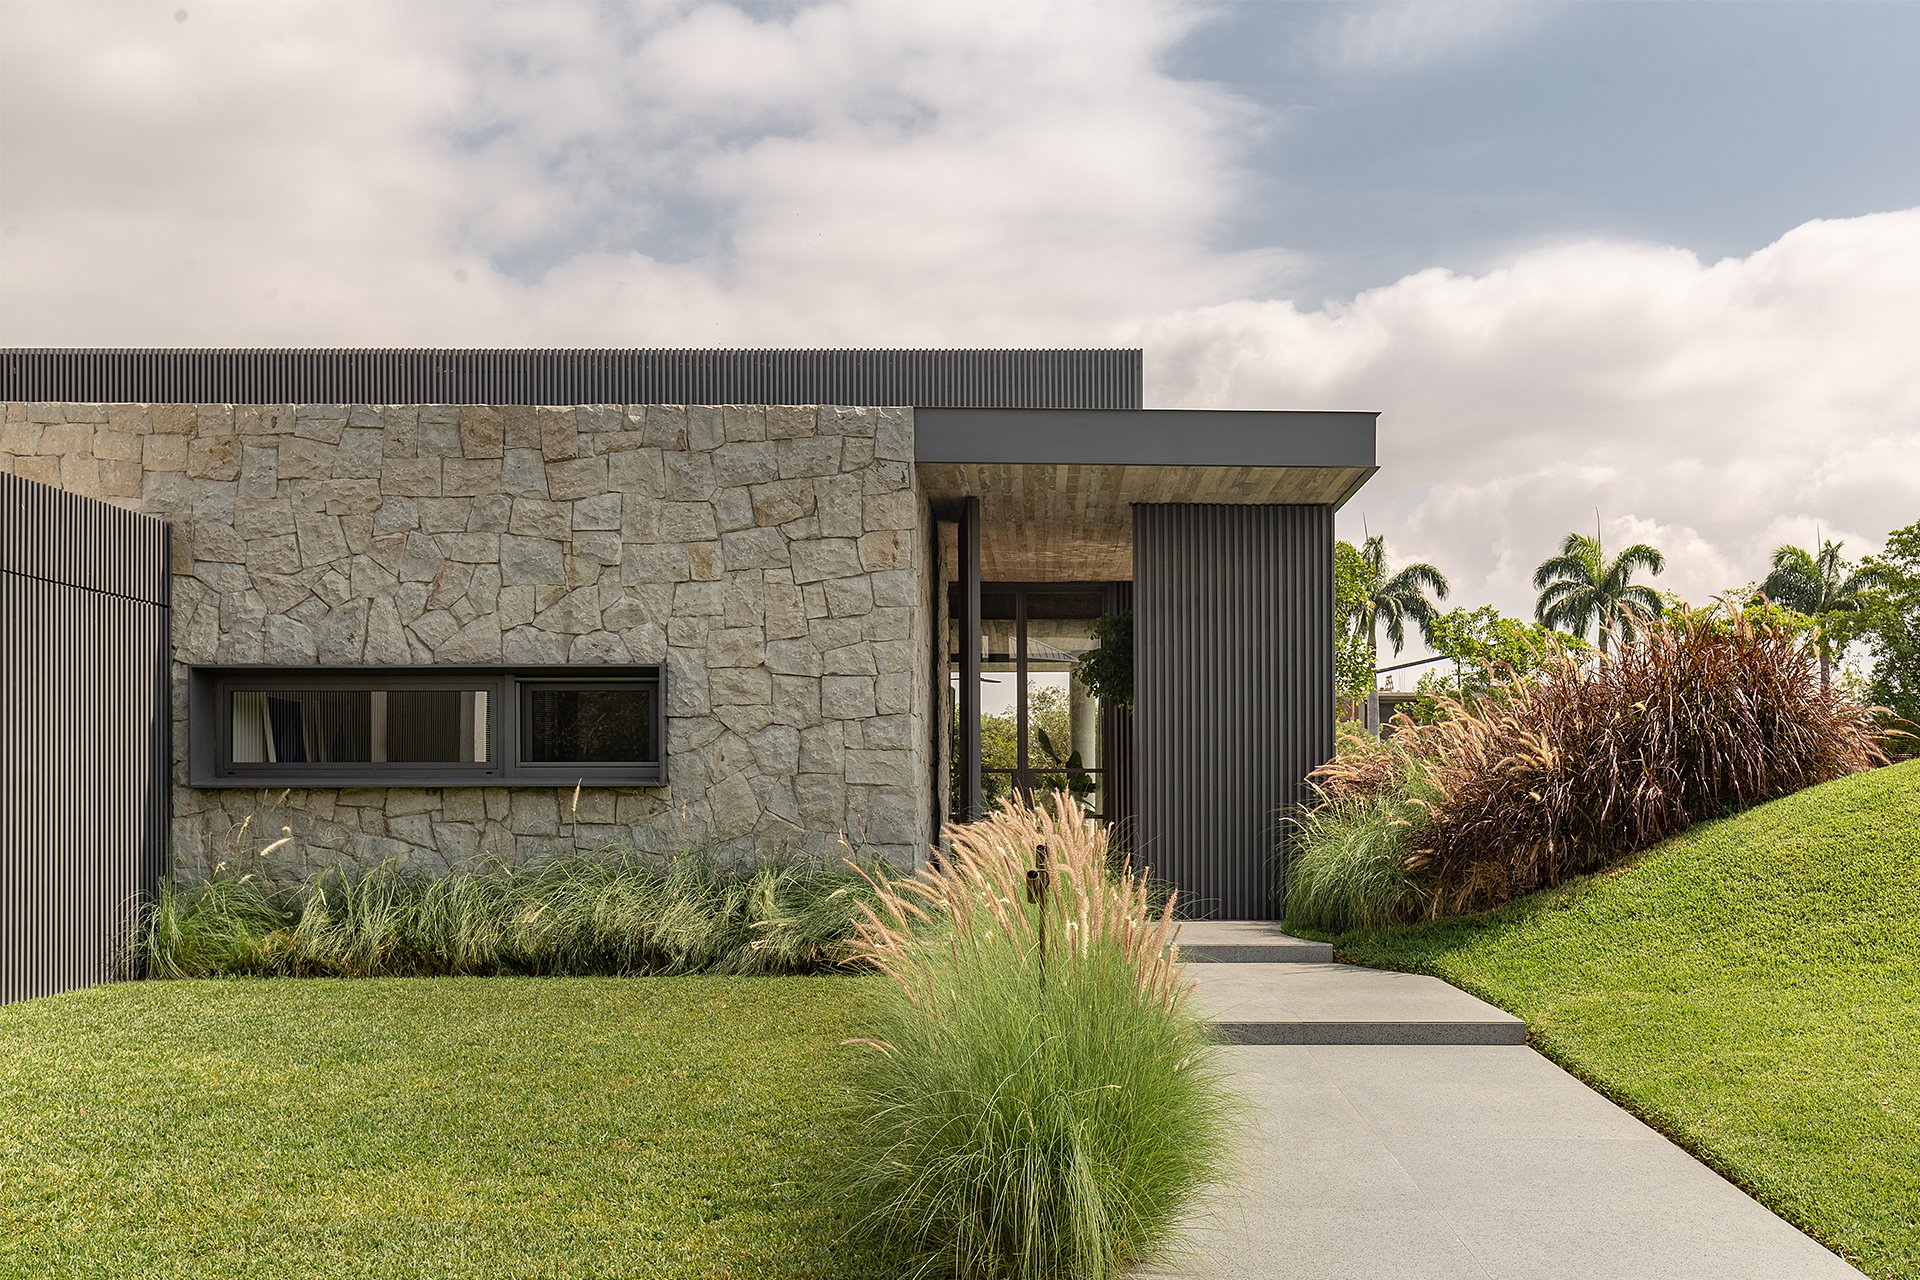 Fachada con jardines de una casa moderna de piedra